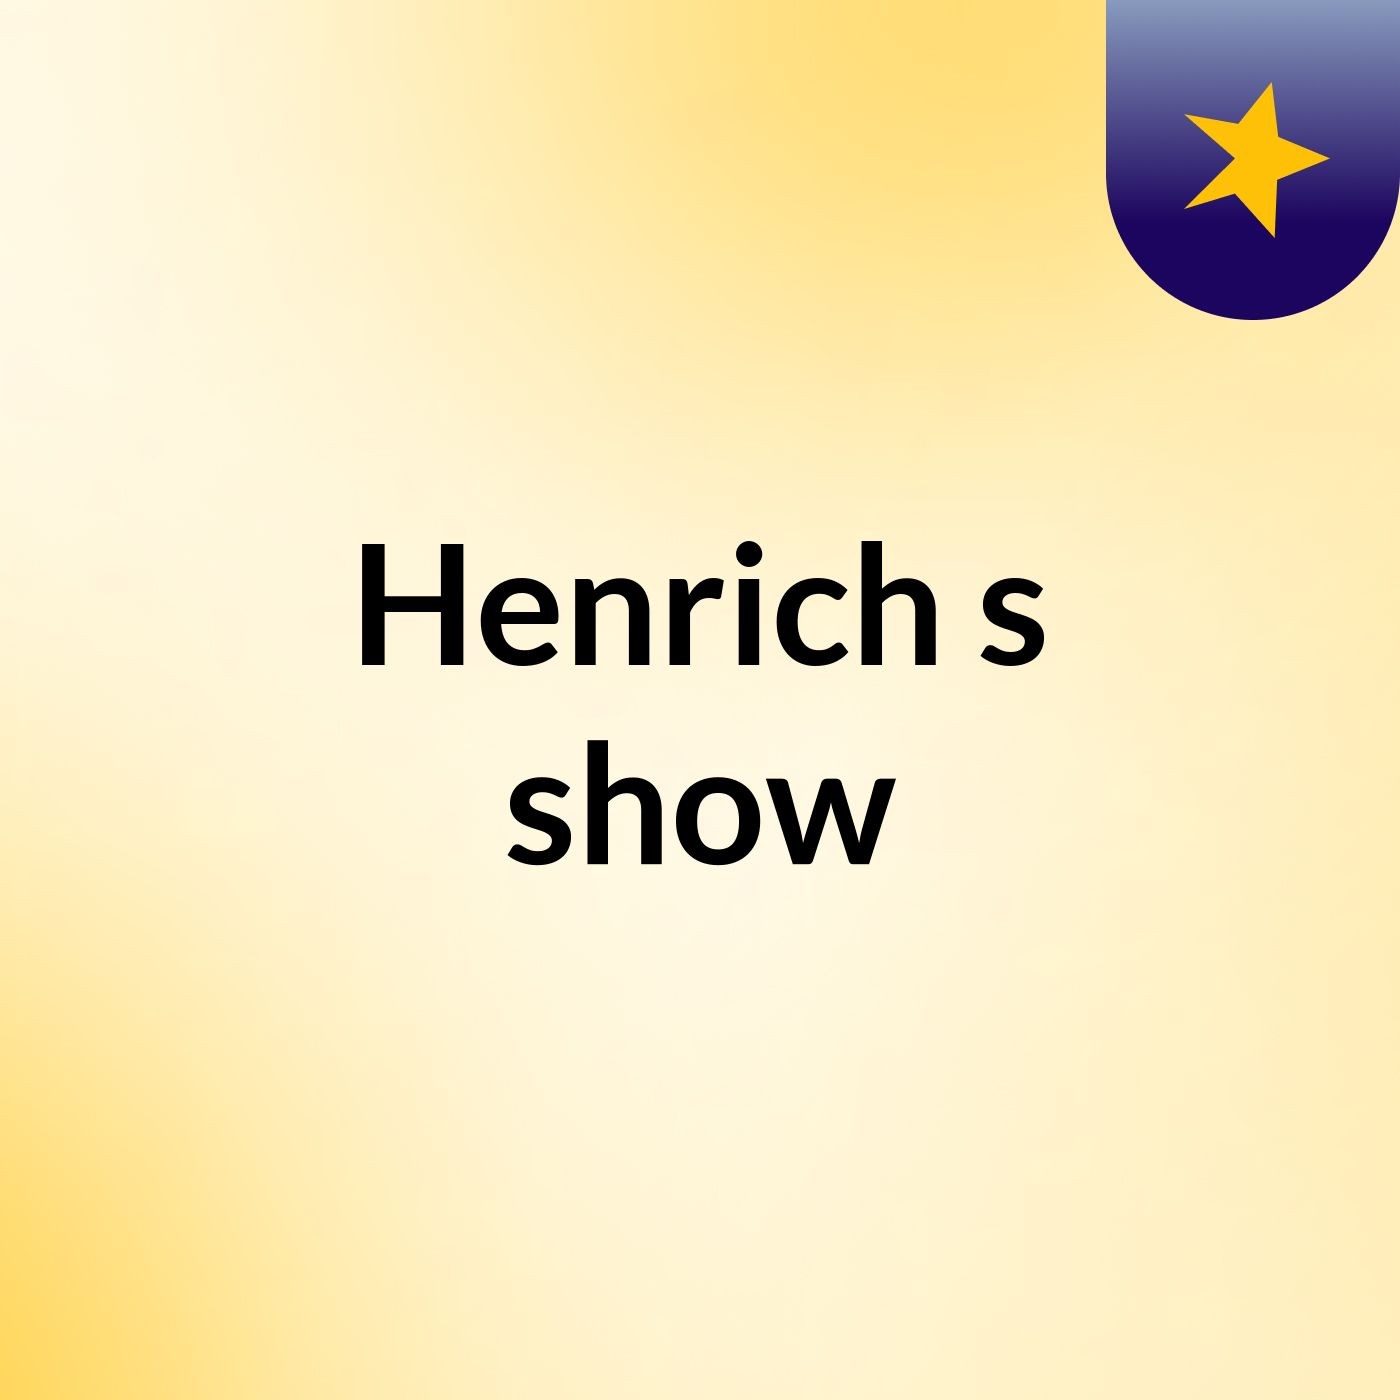 Henrich's show